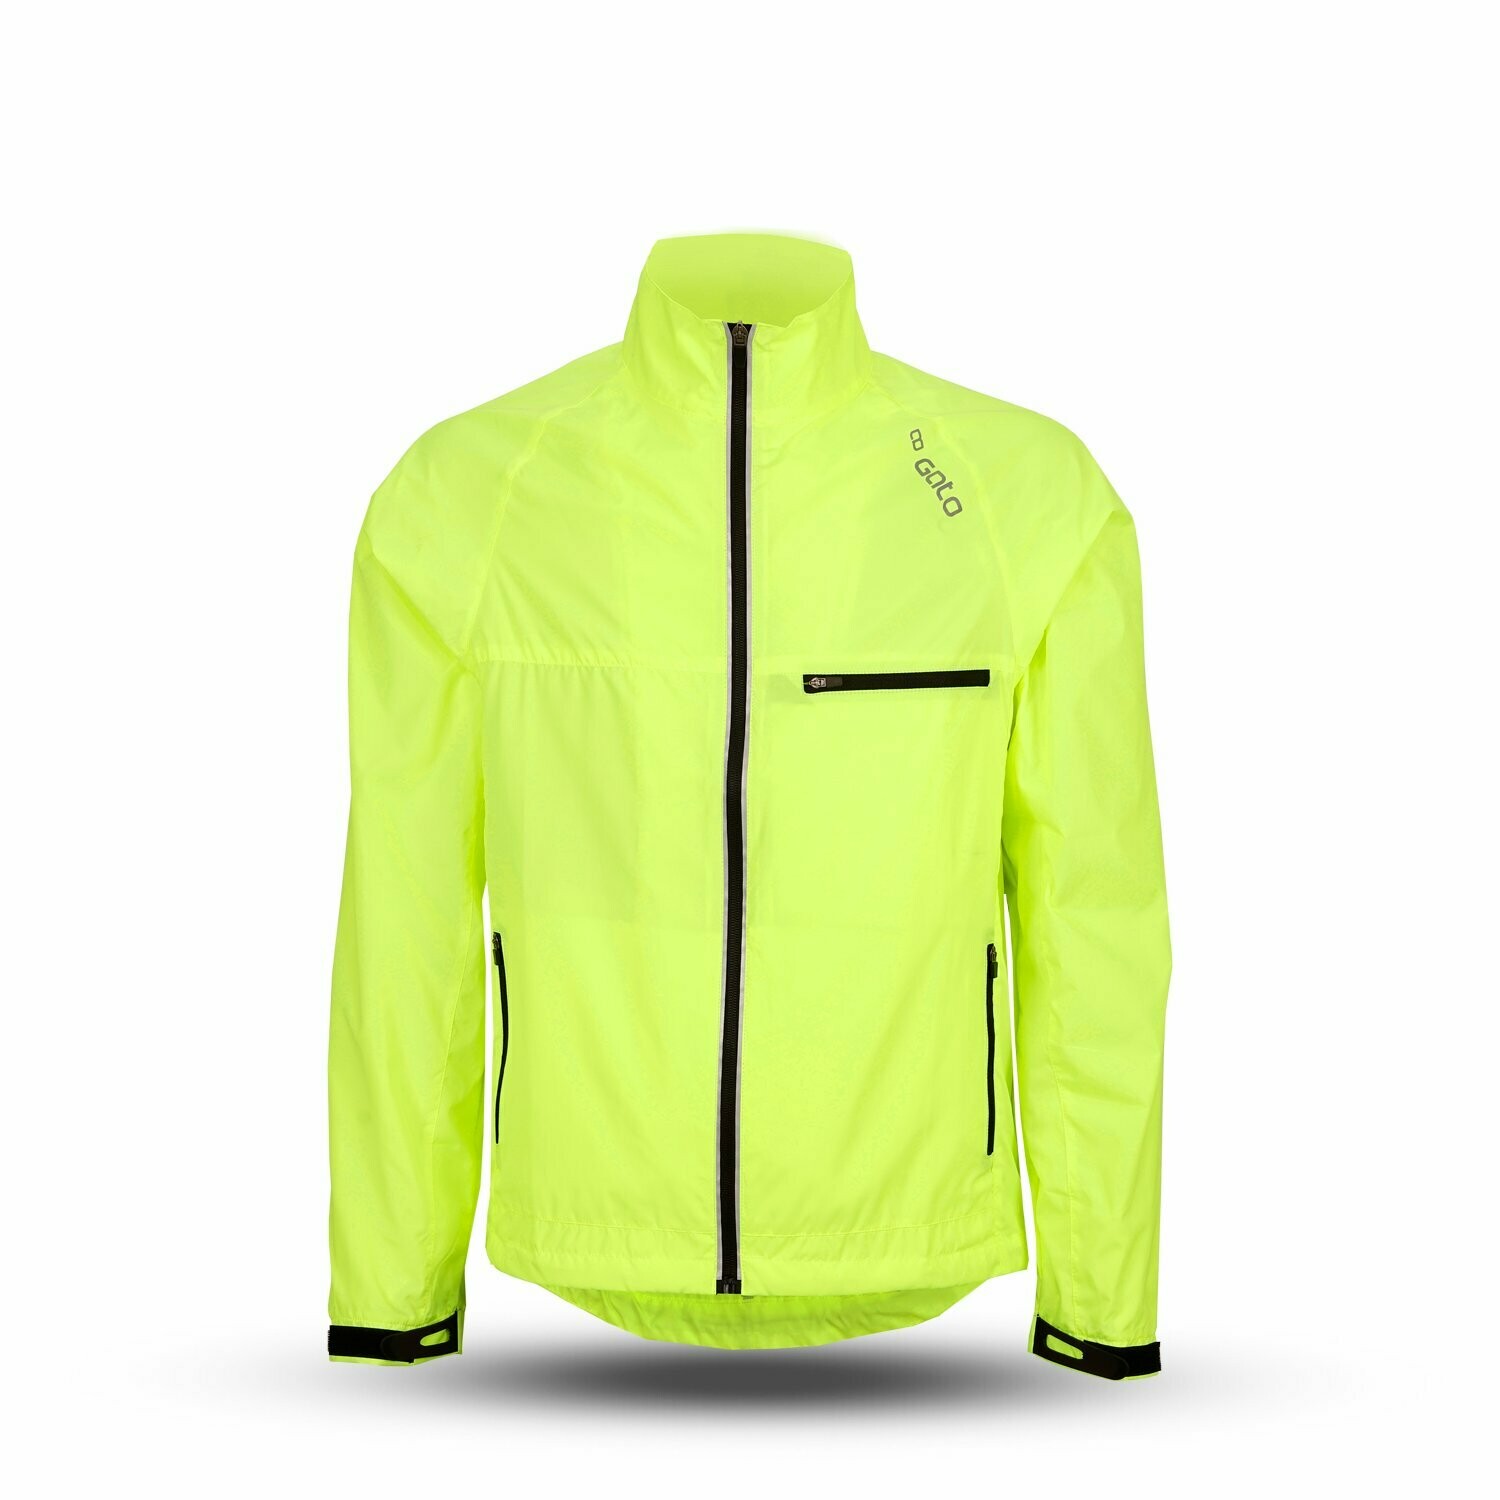 Gato Primer Jacket 2.0 Lauf- und Outdoor-Jacke - Neongelb, Größe: S